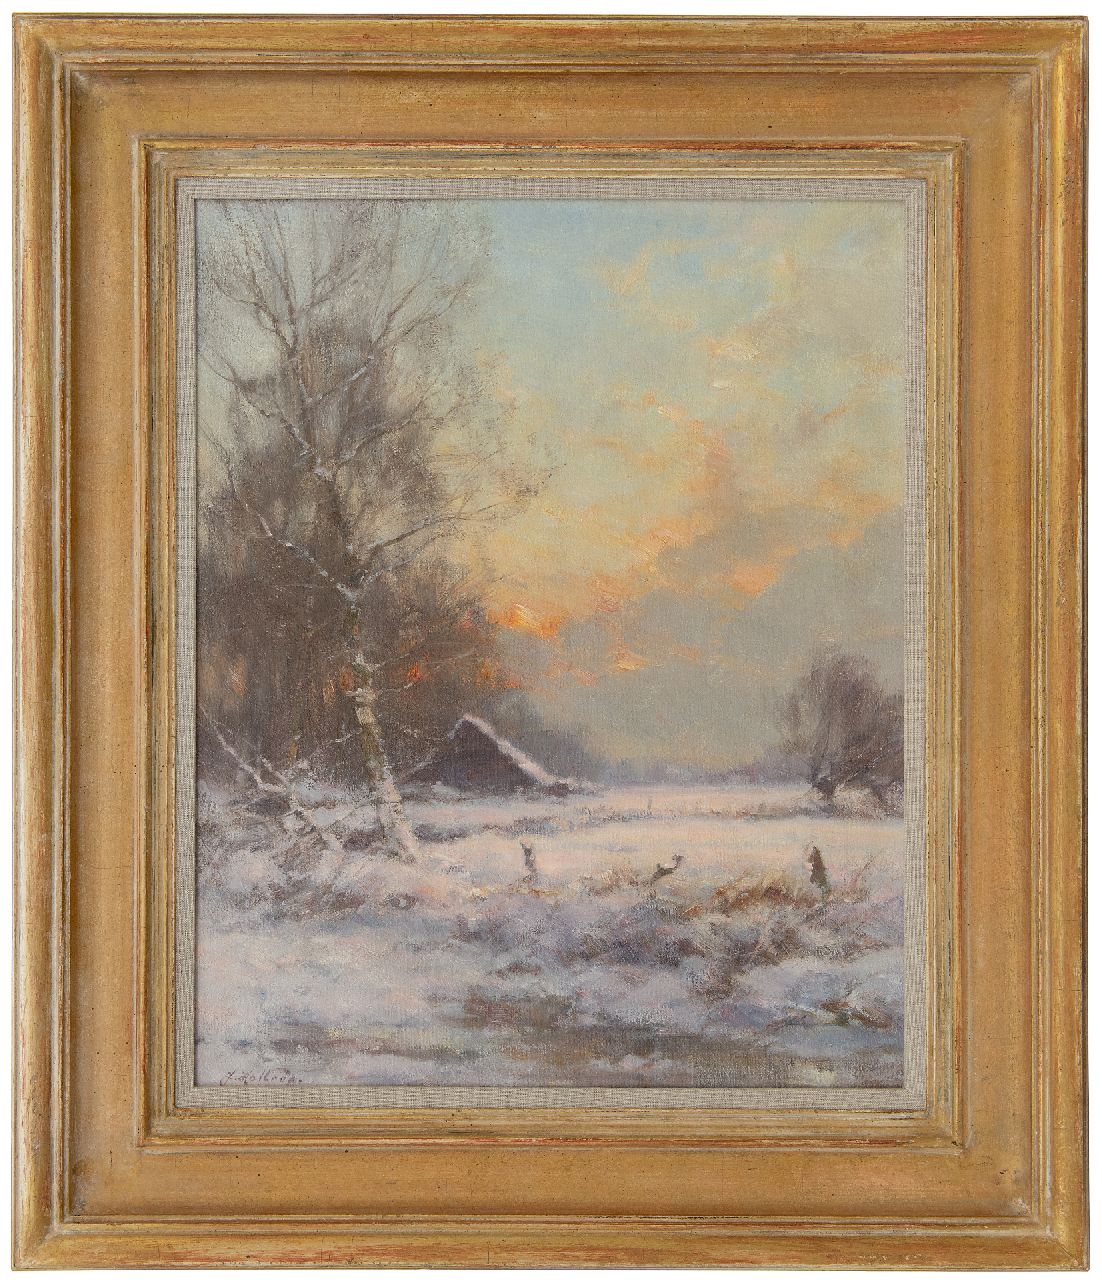 Holtrup J.  | Jan Holtrup | Schilderijen te koop aangeboden | Sneeuwlandschap, olieverf op doek 50,3 x 40,3 cm, gesigneerd linksonder